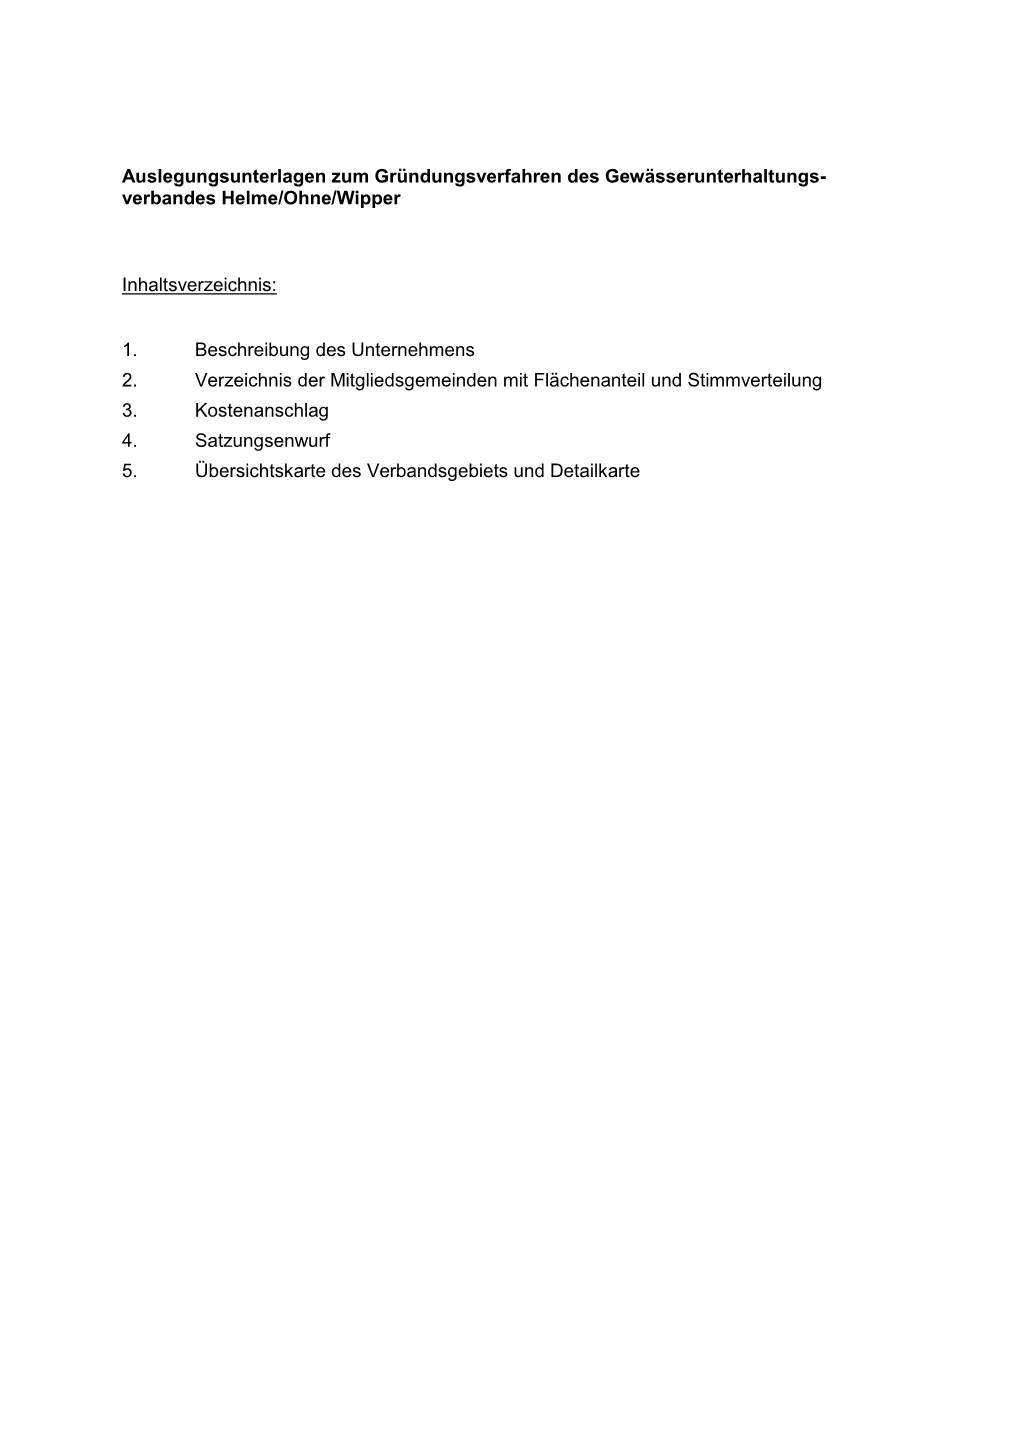 Verbandes Helme/Ohne/Wipper Inhaltsverzeichnis